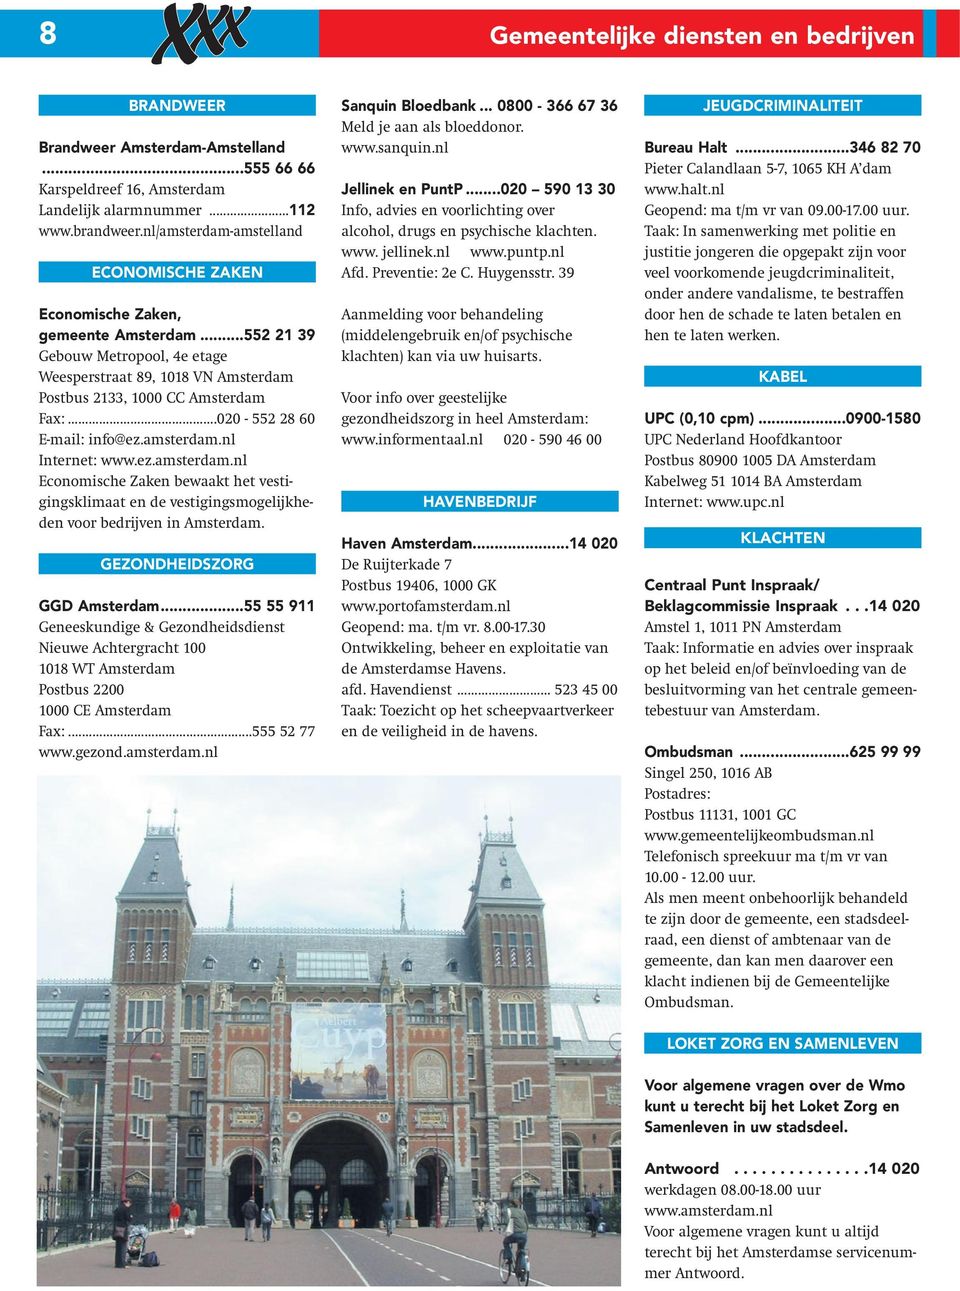 ..020-552 28 60 E-mail: info@ez.amsterdam.nl Internet: www.ez.amsterdam.nl Economische Zaken bewaakt het vestigingsklimaat en de vestigingsmogelijkheden voor bedrijven in Amsterdam.